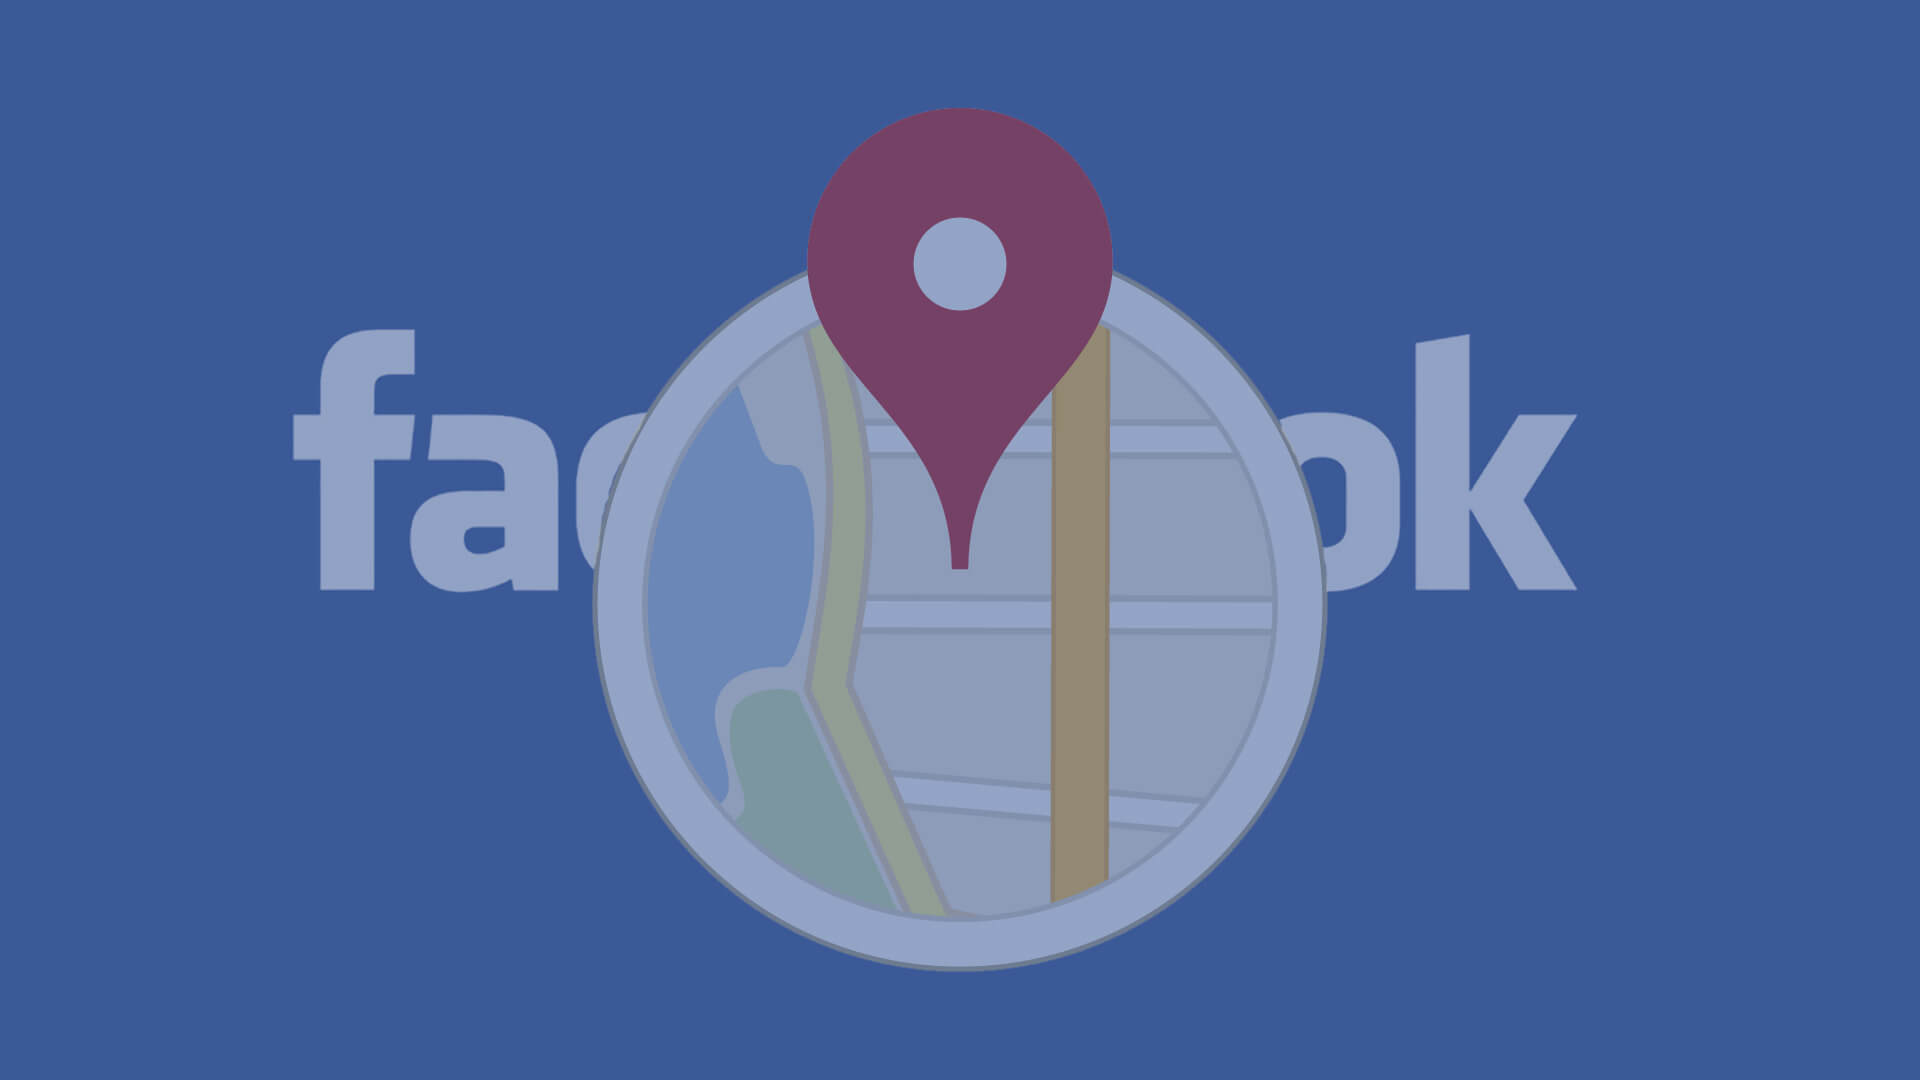 7 cambios de Facebook que lo convierten en un verdadero reproductor de búsqueda local